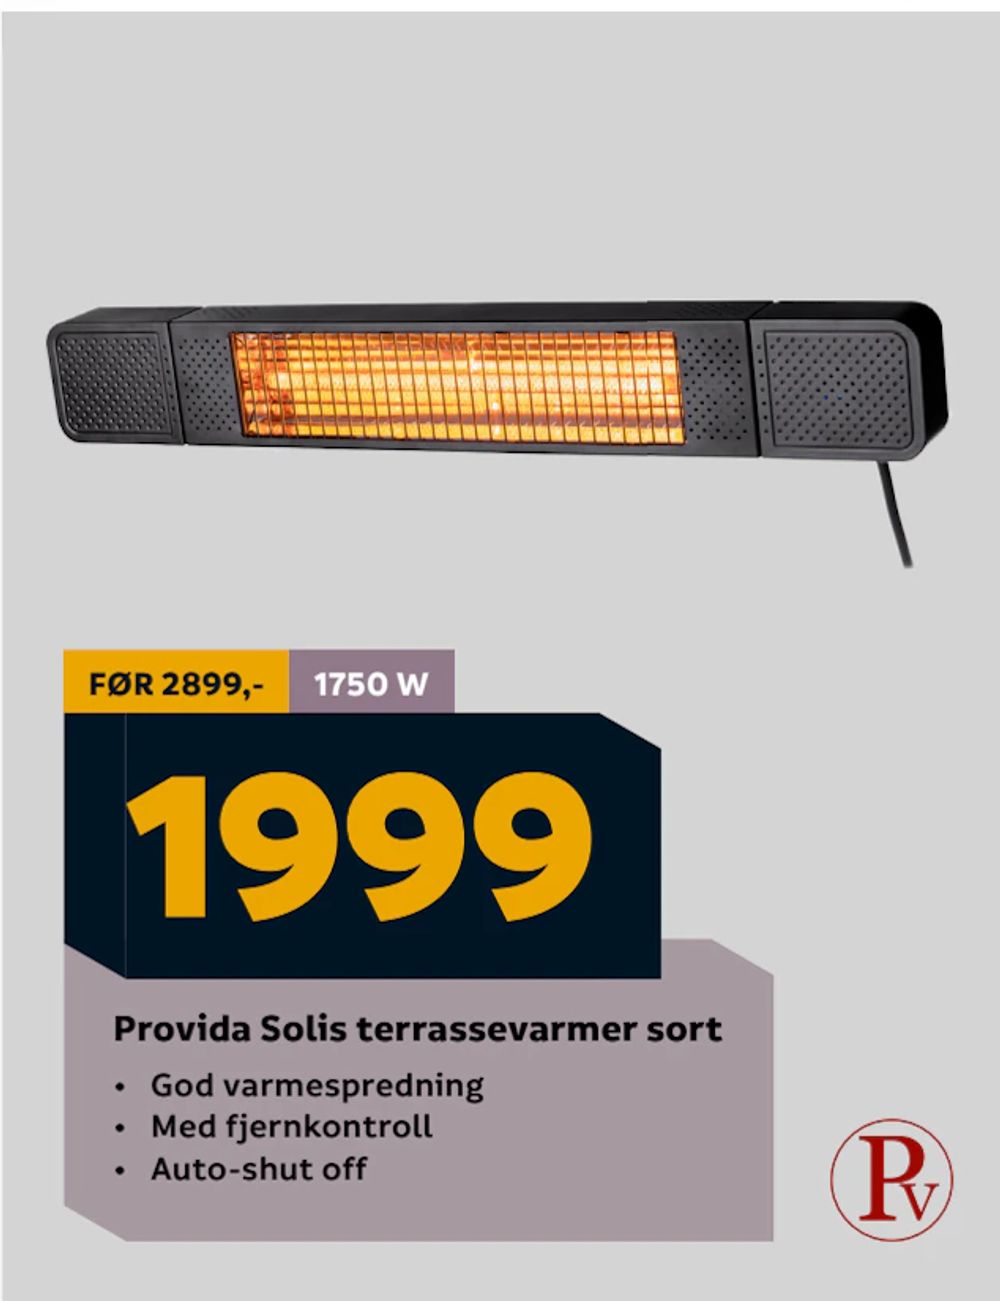 Tilbud på Provida Solis terrassevarmer sort fra Megaflis til 1 999 kr